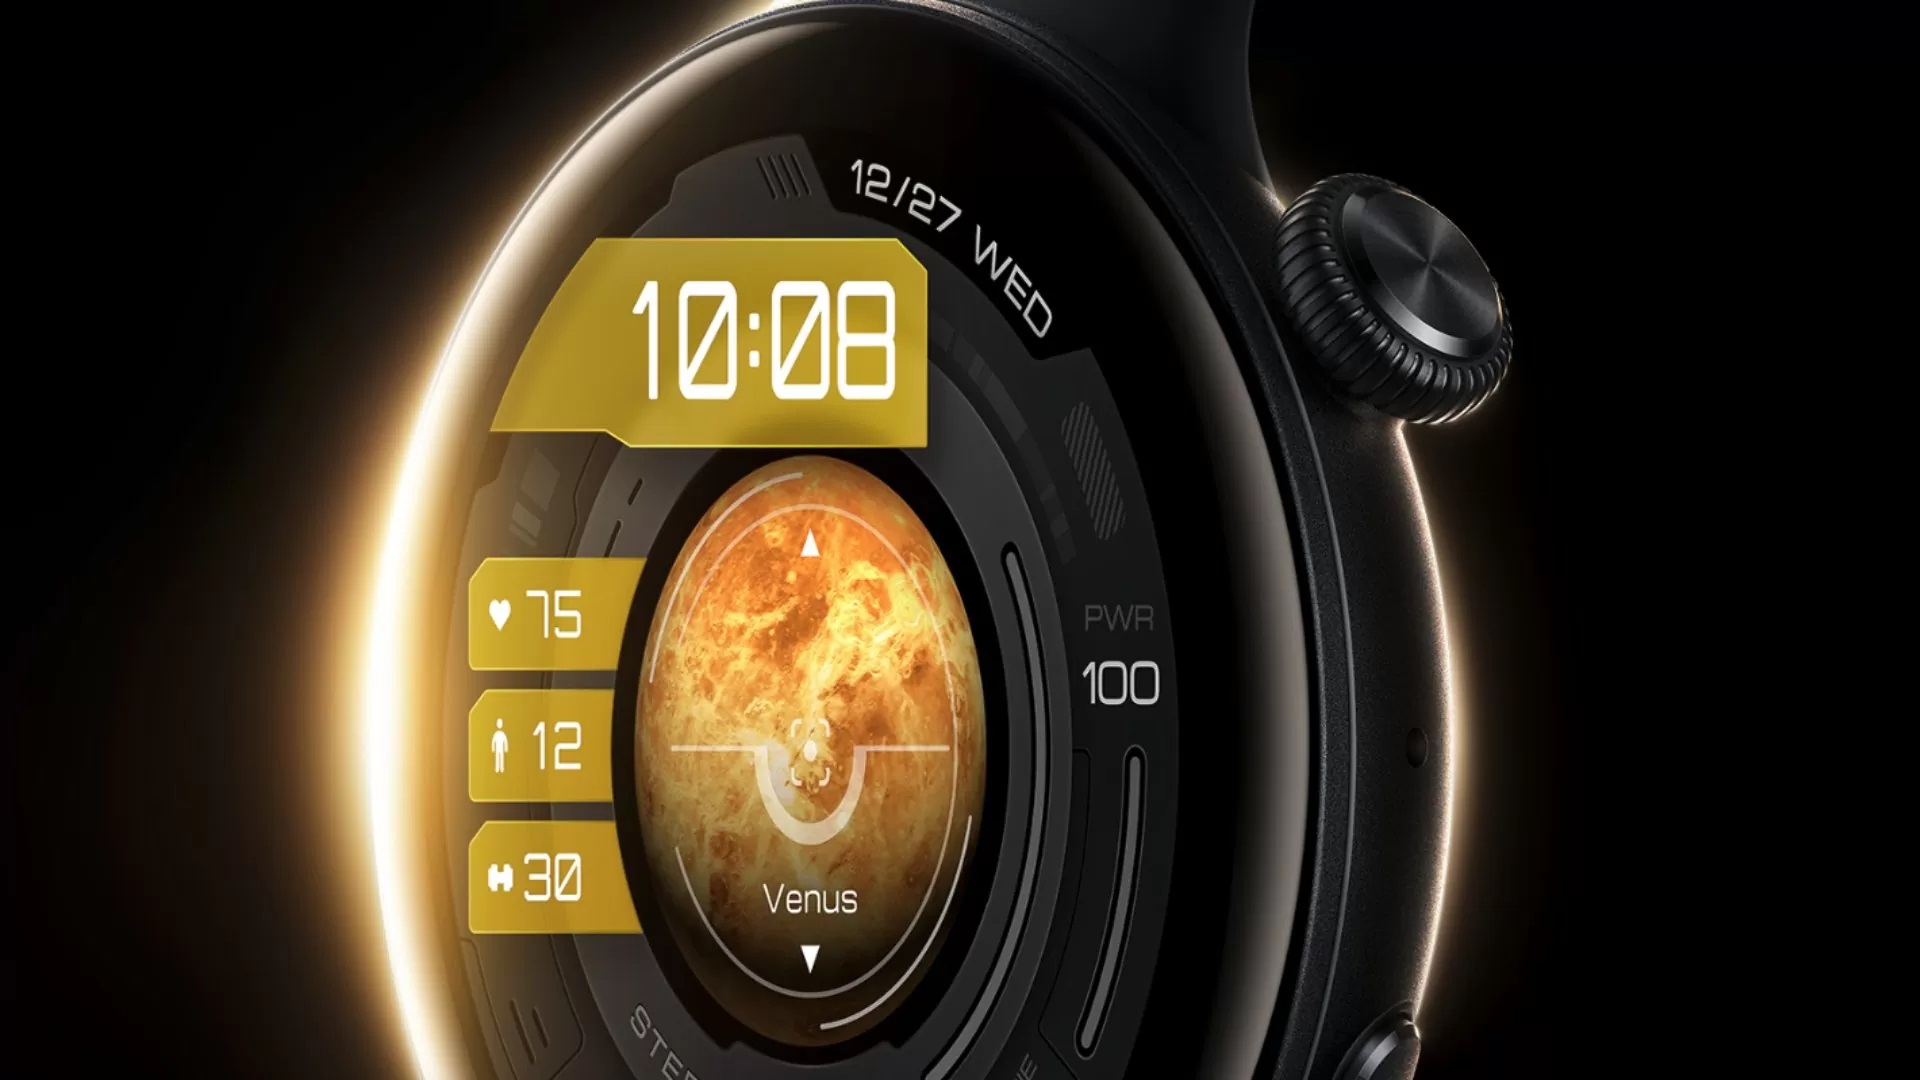 De iQOO Watch smartwatch krijgt ondersteuning voor eSIM en een batterijlevensduur tot 16 dagen